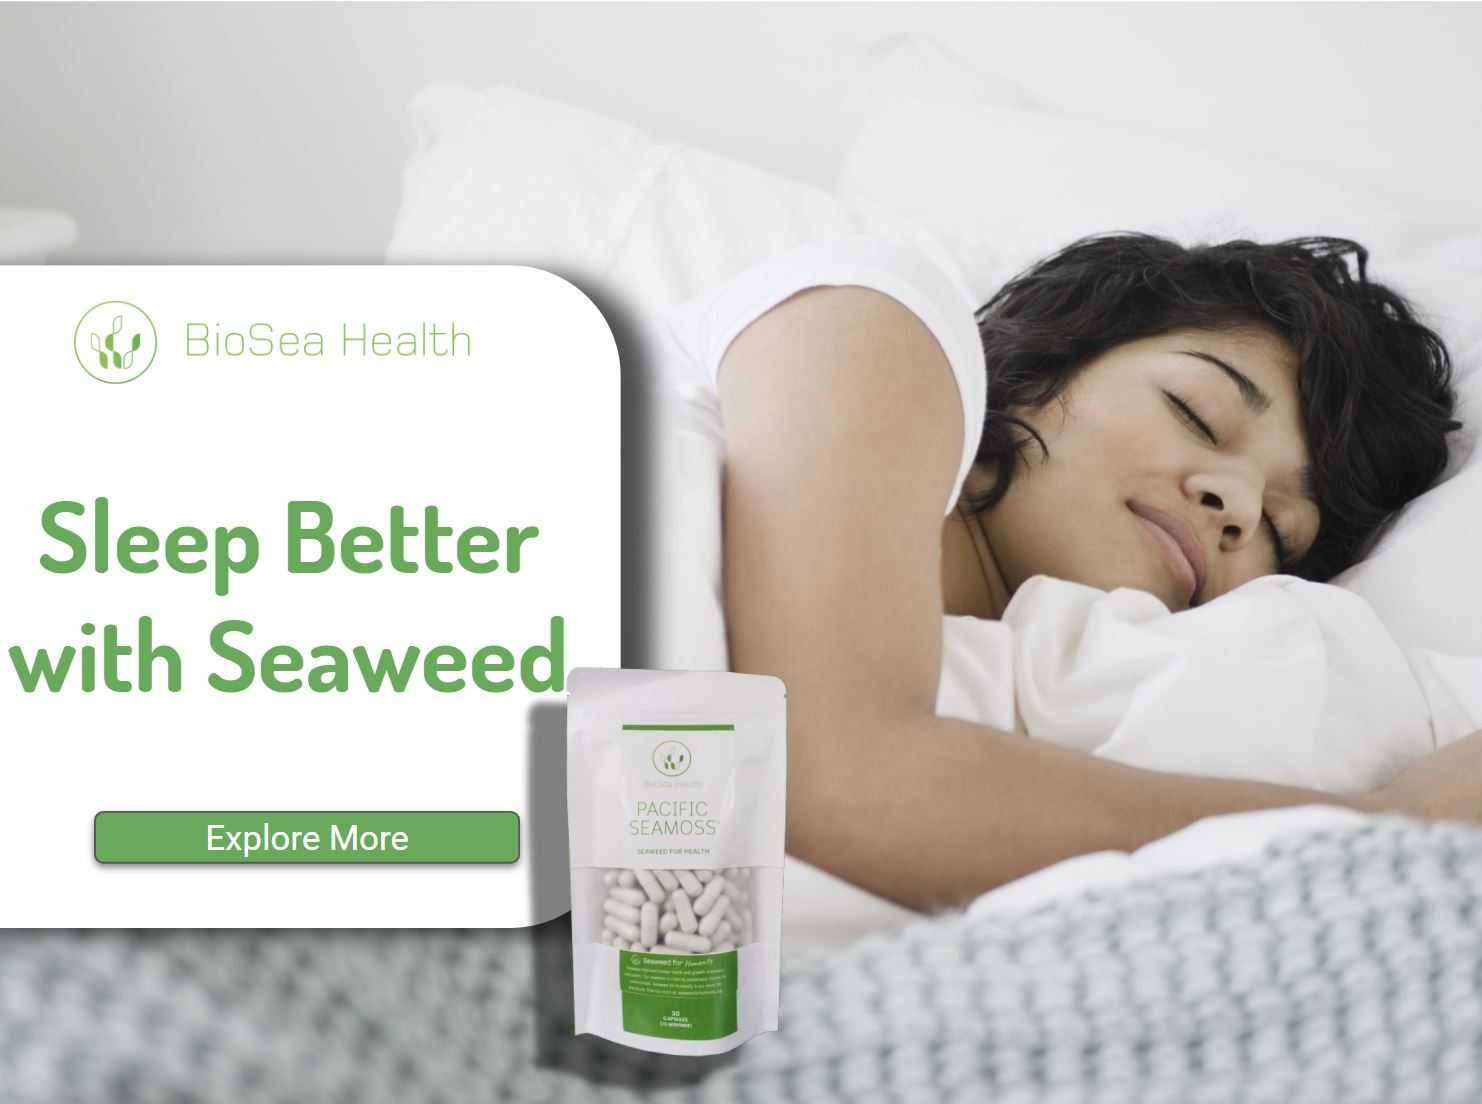 Sleep Better with Seaweed